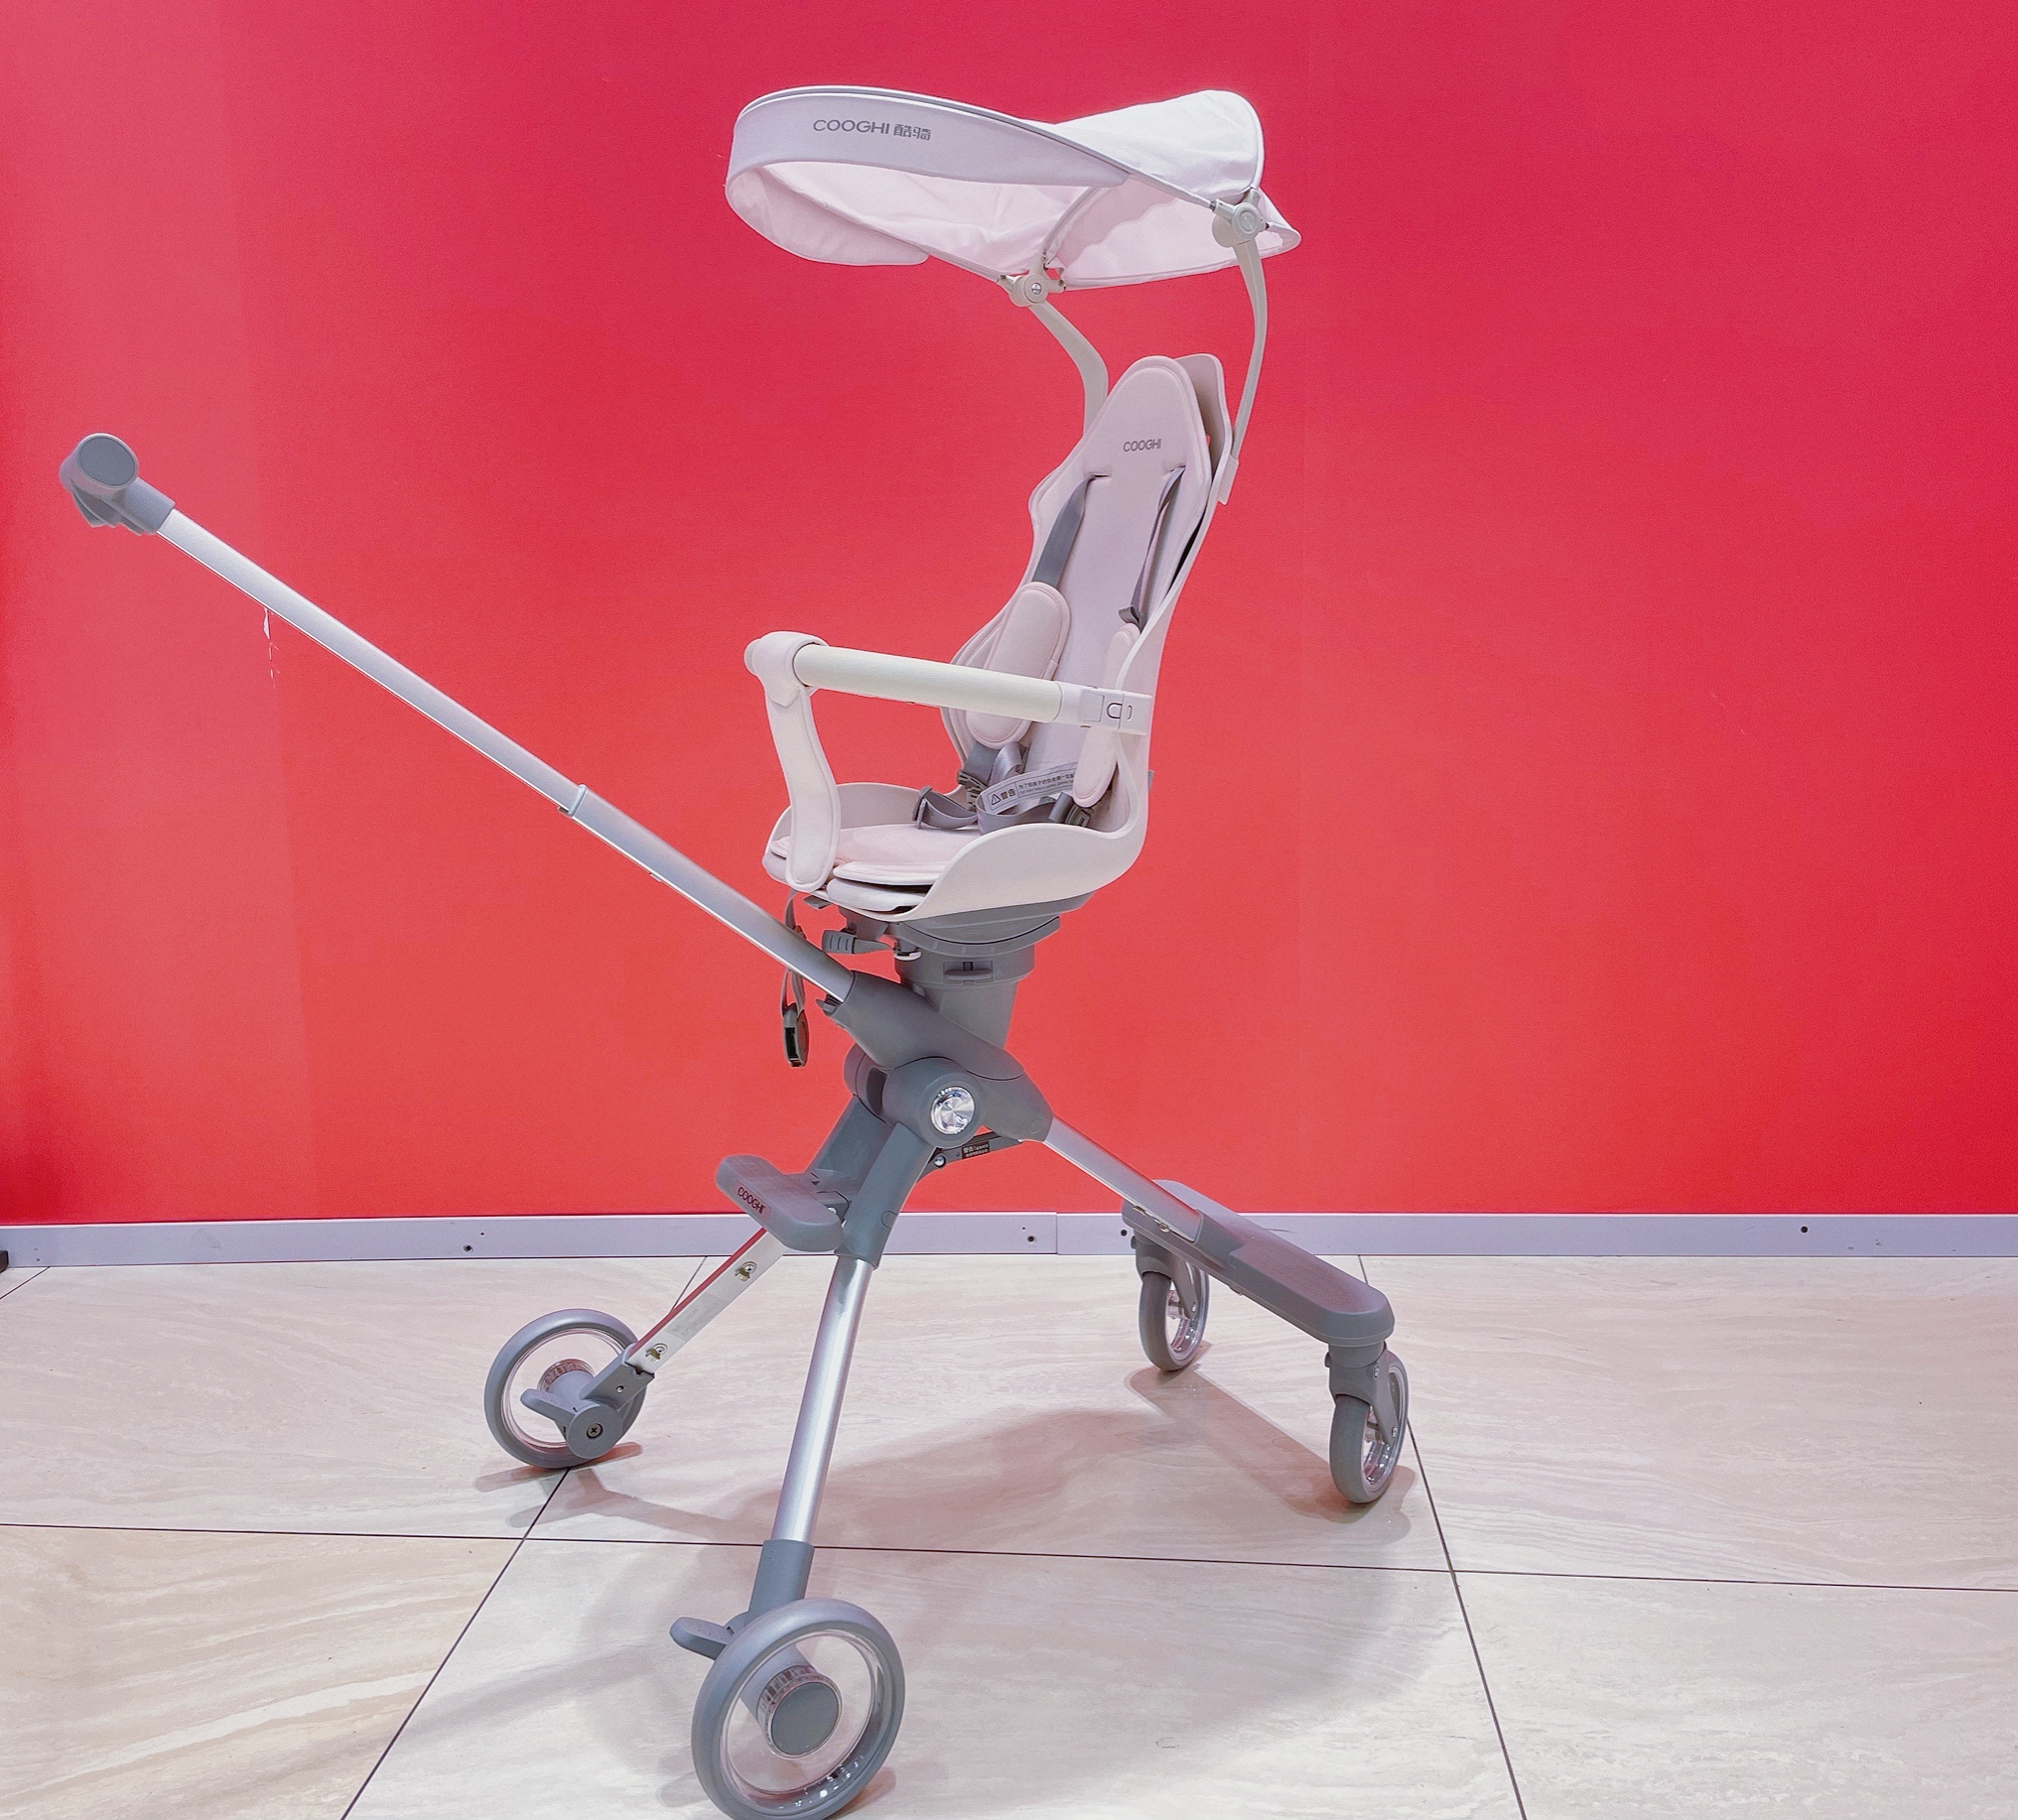 COOGHI酷骑高景观可折叠婴儿推车，颜值与性能并存